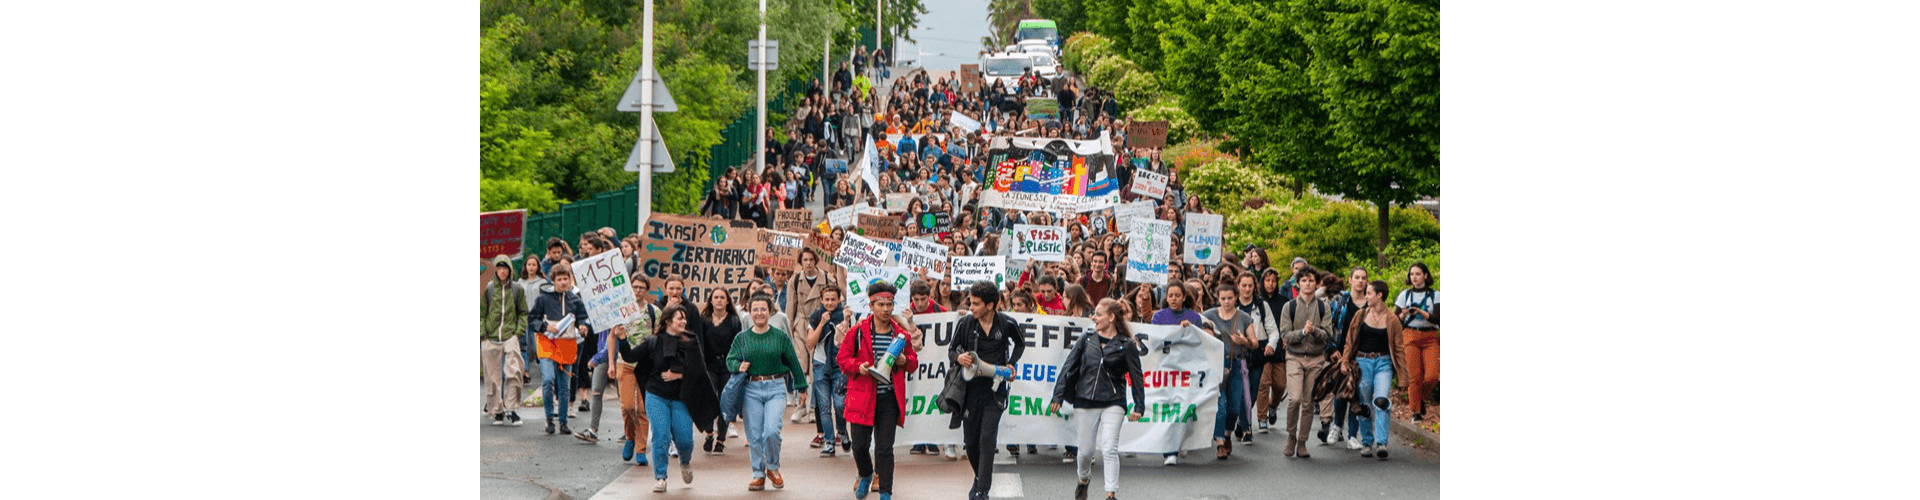 Mobilisation massive à Bayonne pour la deuxième journée internationale de grève de la jeunesse pour le climat